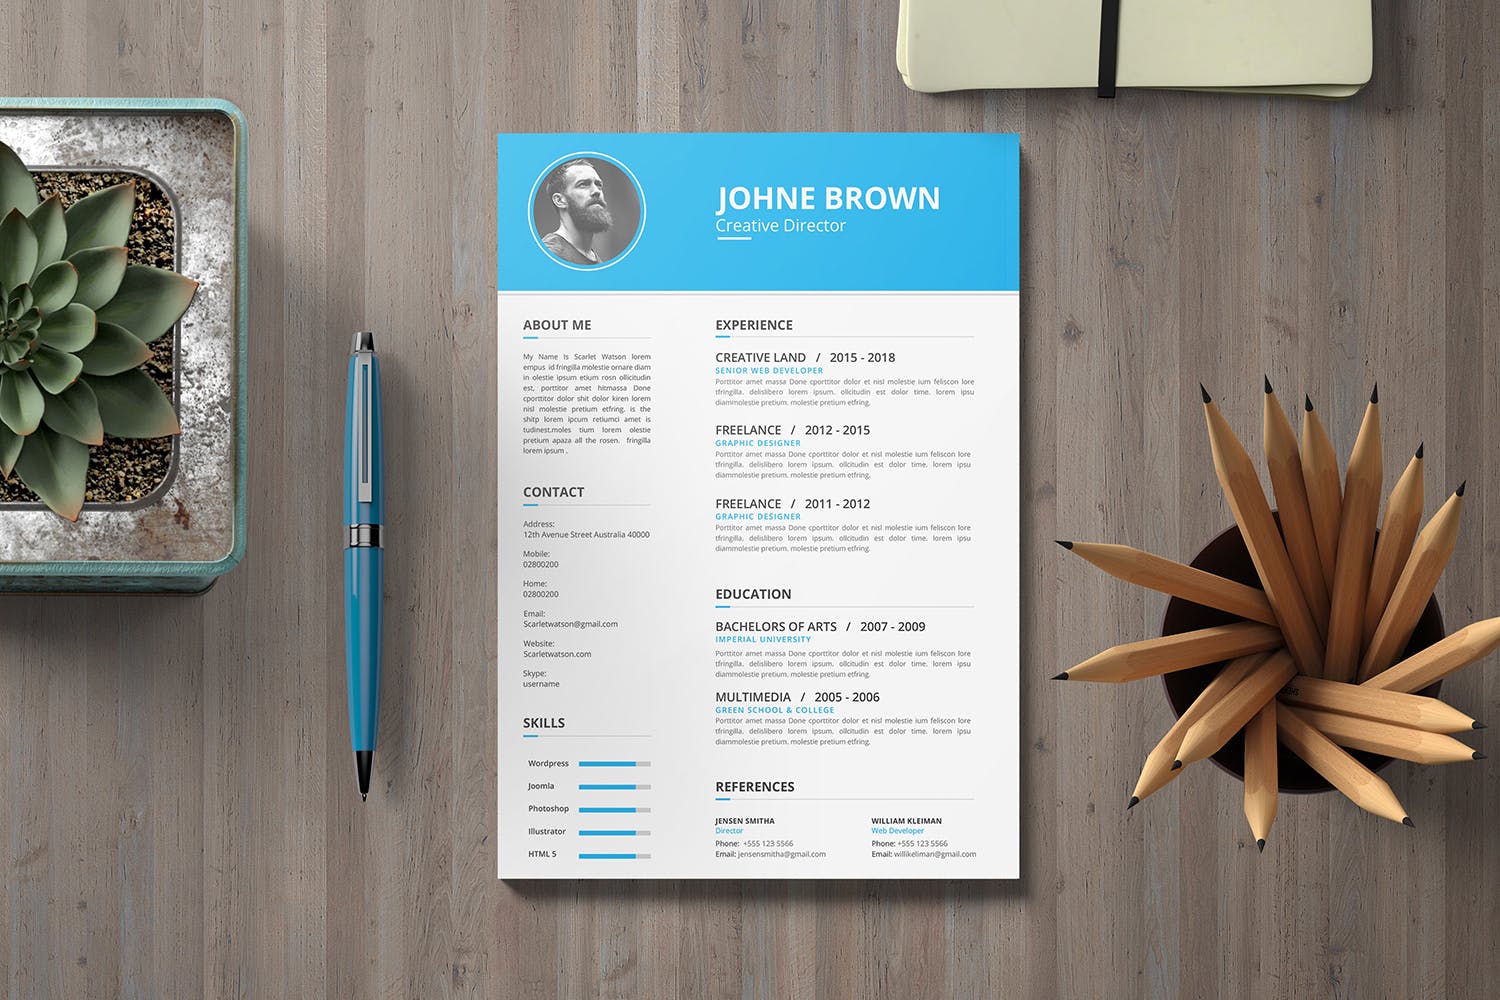 创意总监工作履历表设计模板 CV Resume插图